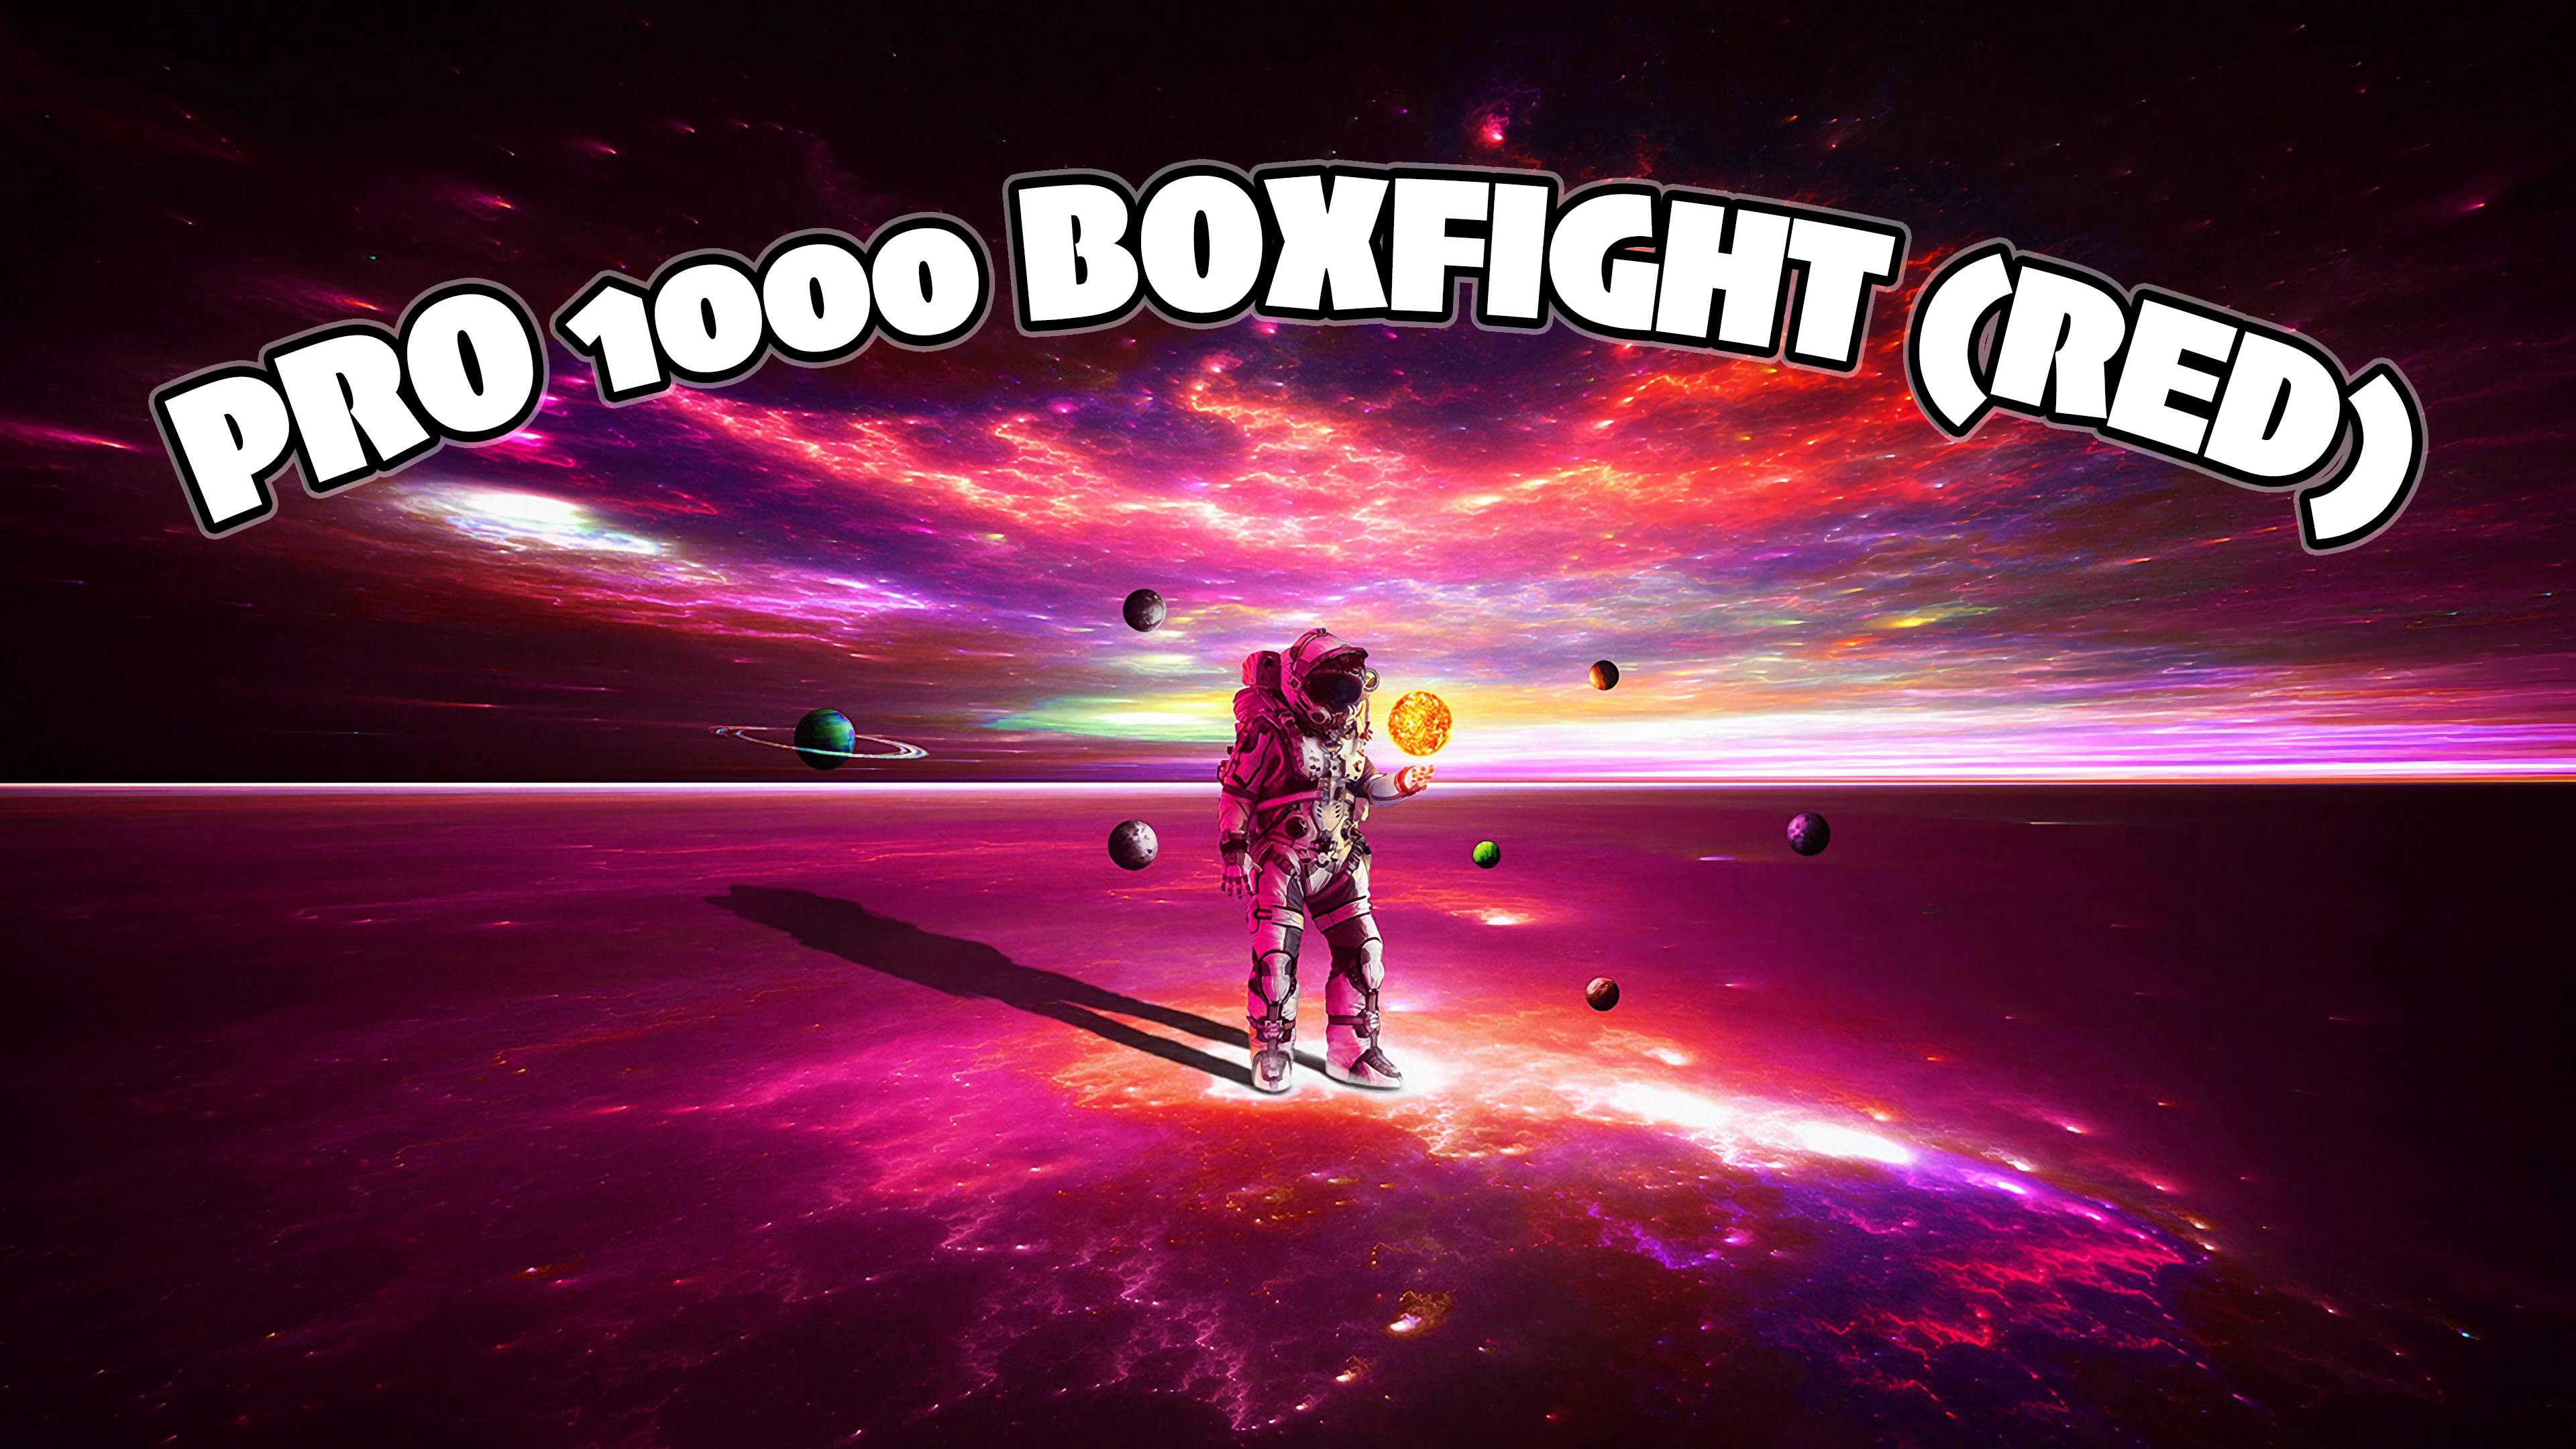 PRO 1000 BOXFIGHT (RED)